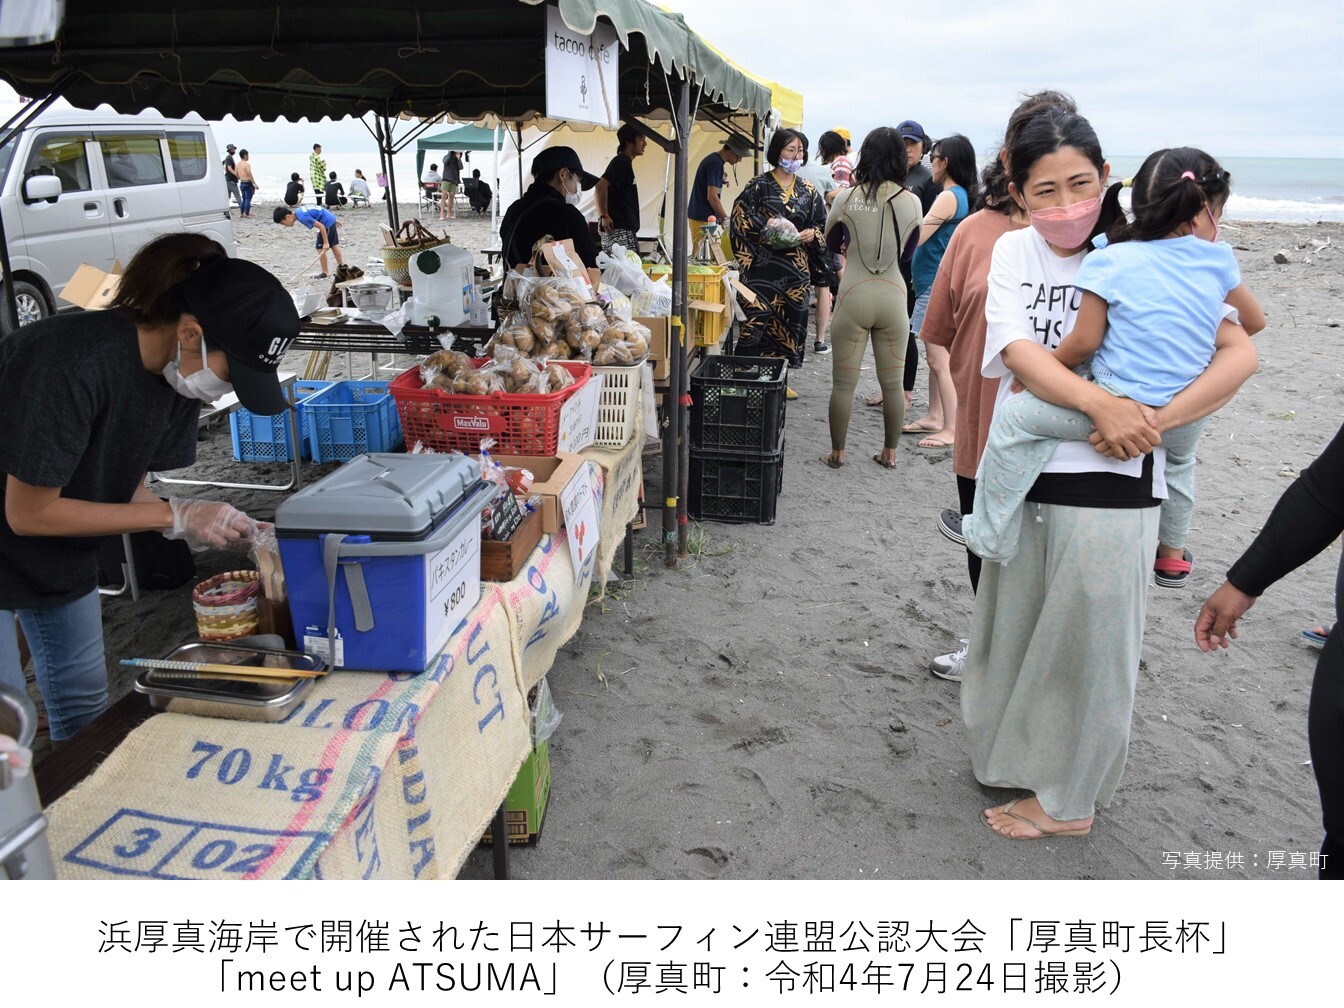 浜厚真海岸で開催された日本サーフィン連盟公認大会「厚真町長杯」「meet up ATSUMA」